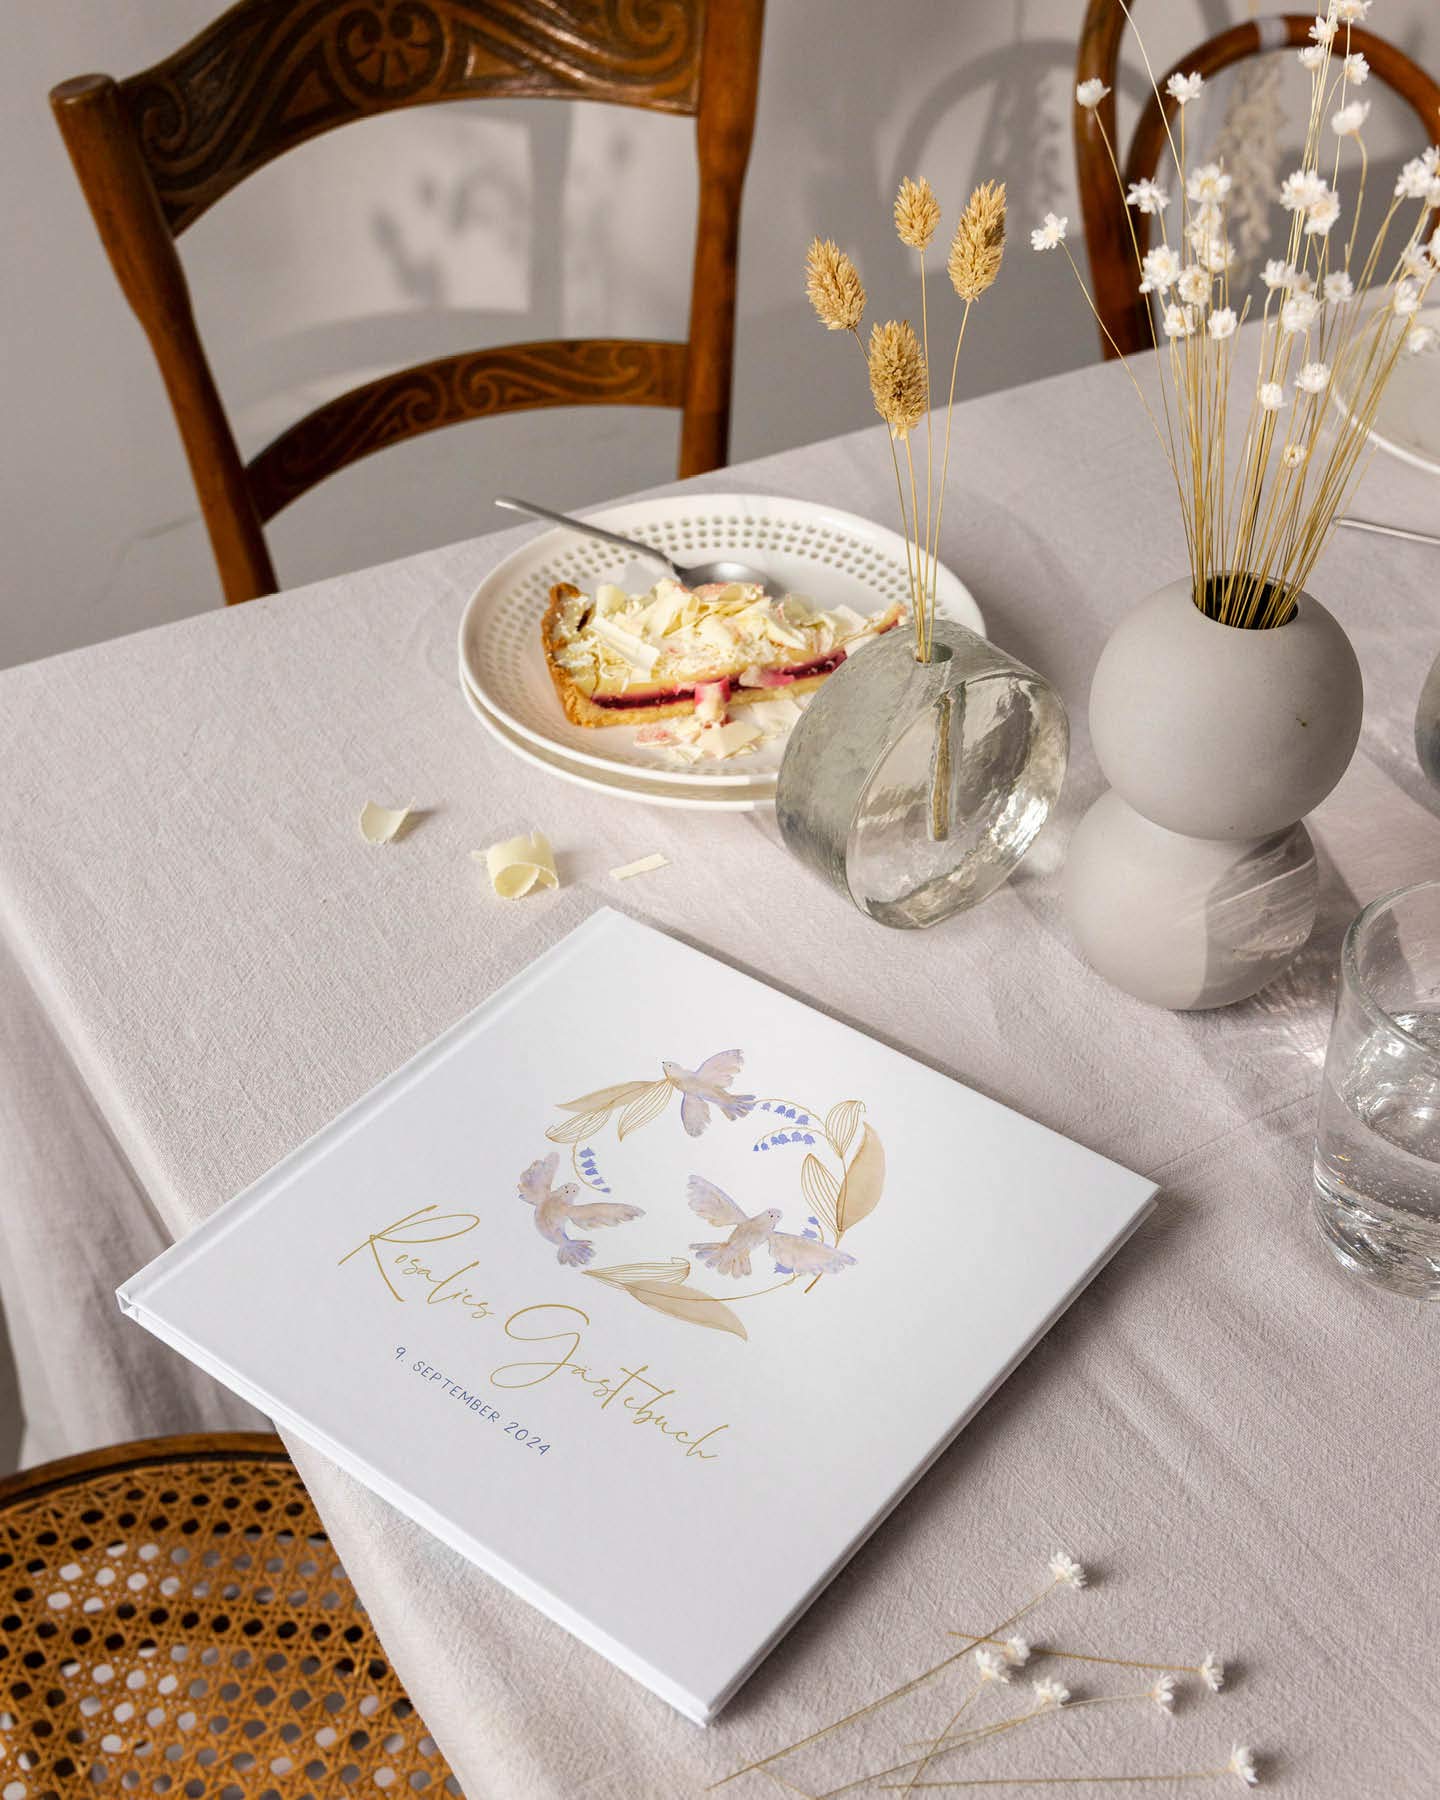 Personalisiertes Gästebuch mit zarten Tauben-Illustrationen liegt auf einem Tisch mit heller Leinentischdecke zum Namensgebungsfest.